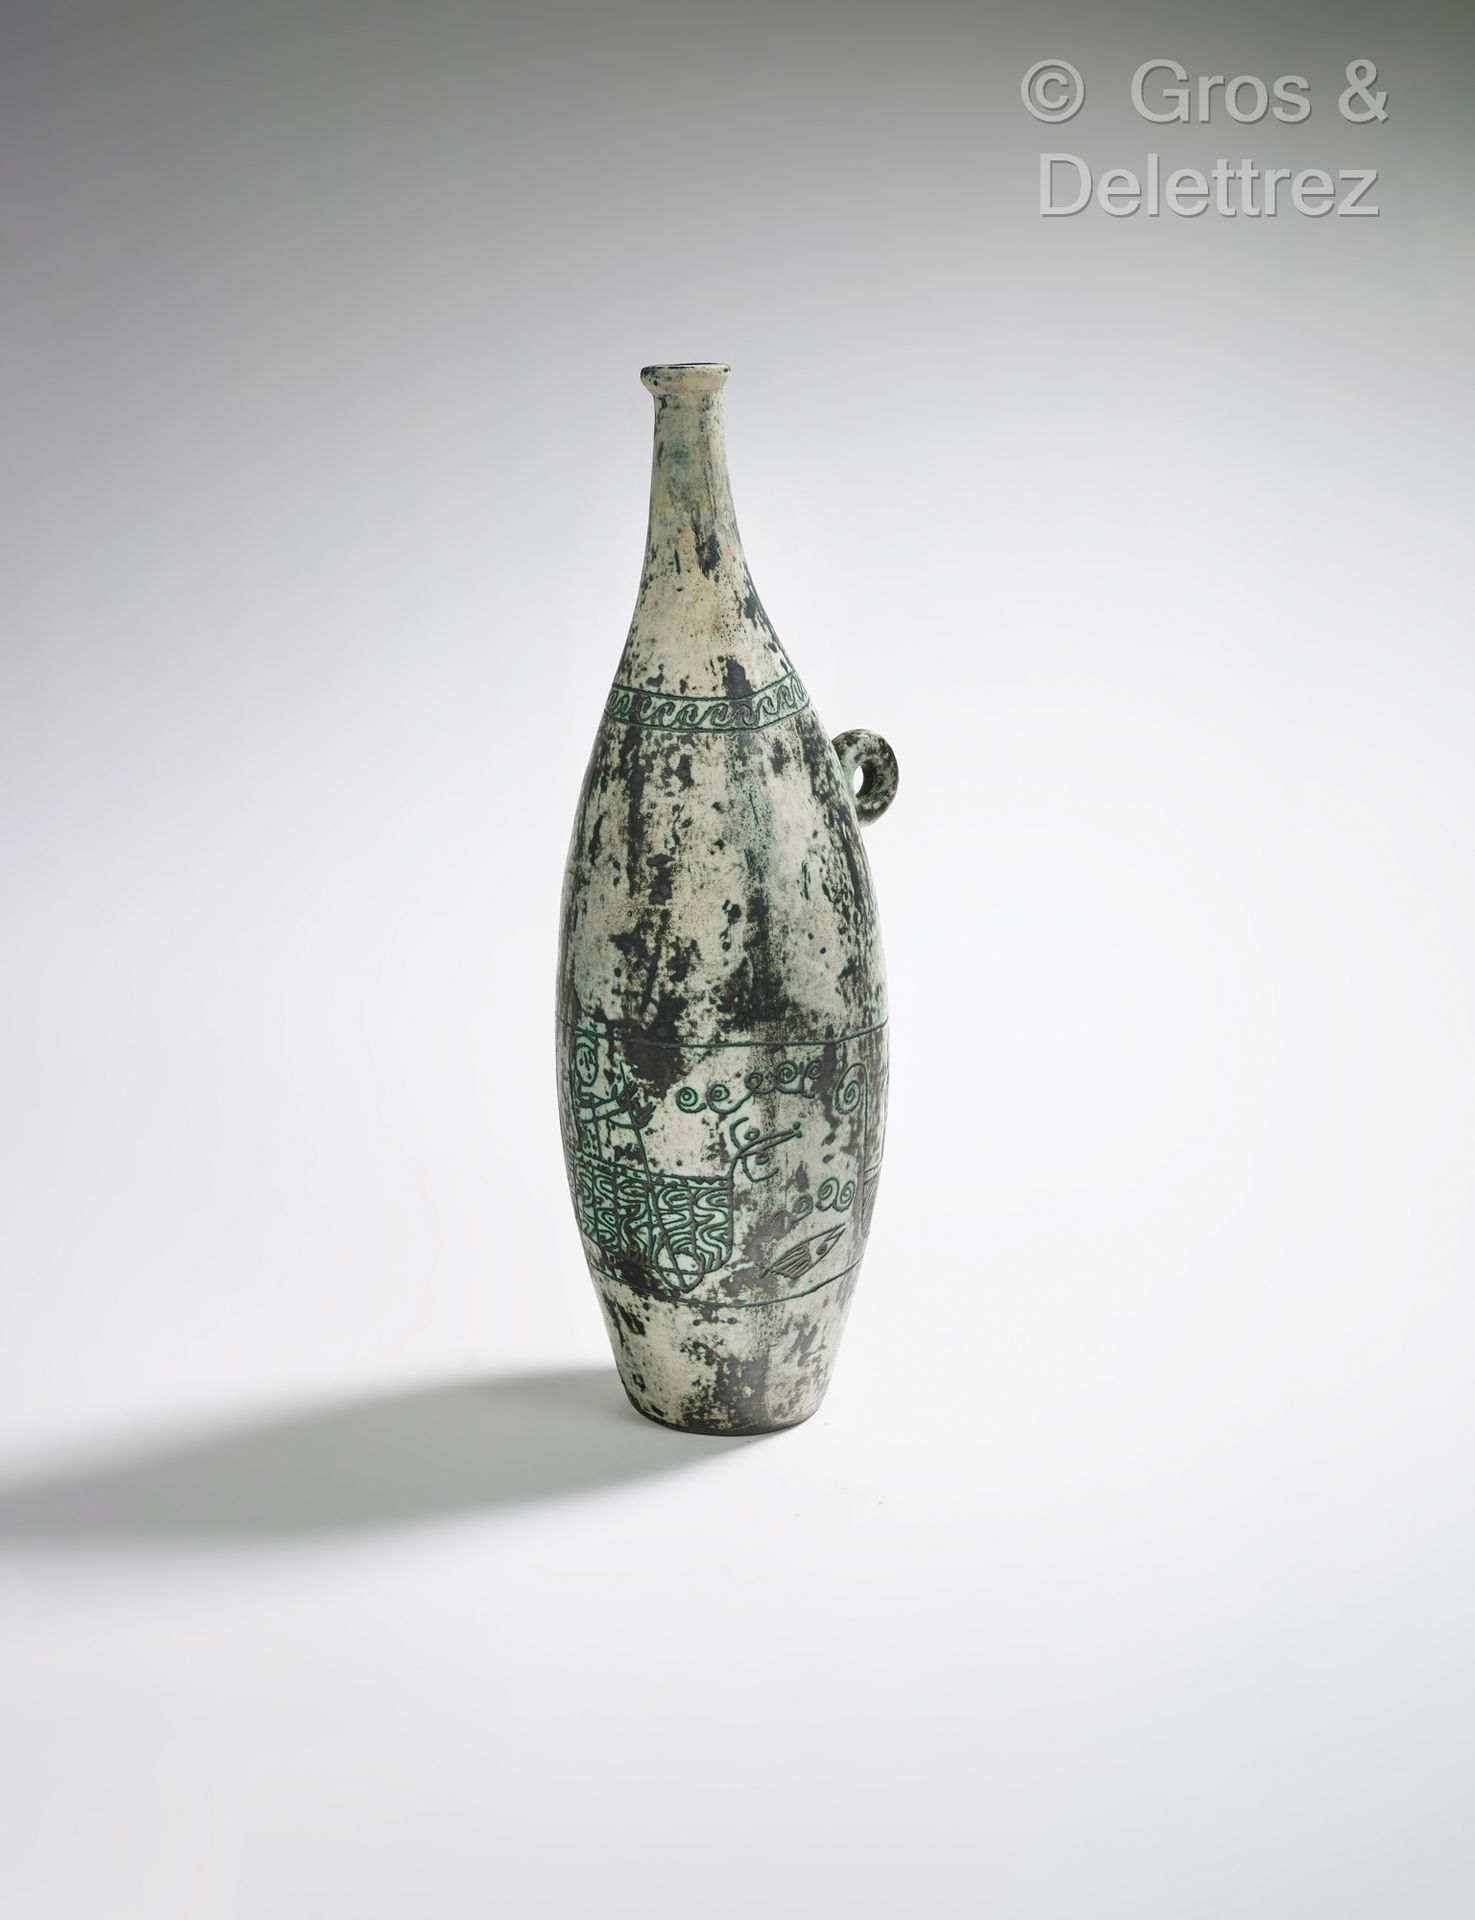 Null 雅克-布林 (1920-1995)
珐琅彩陶瓷花瓶，手柄上装饰着人物的门楣。
已签名。
高39厘米